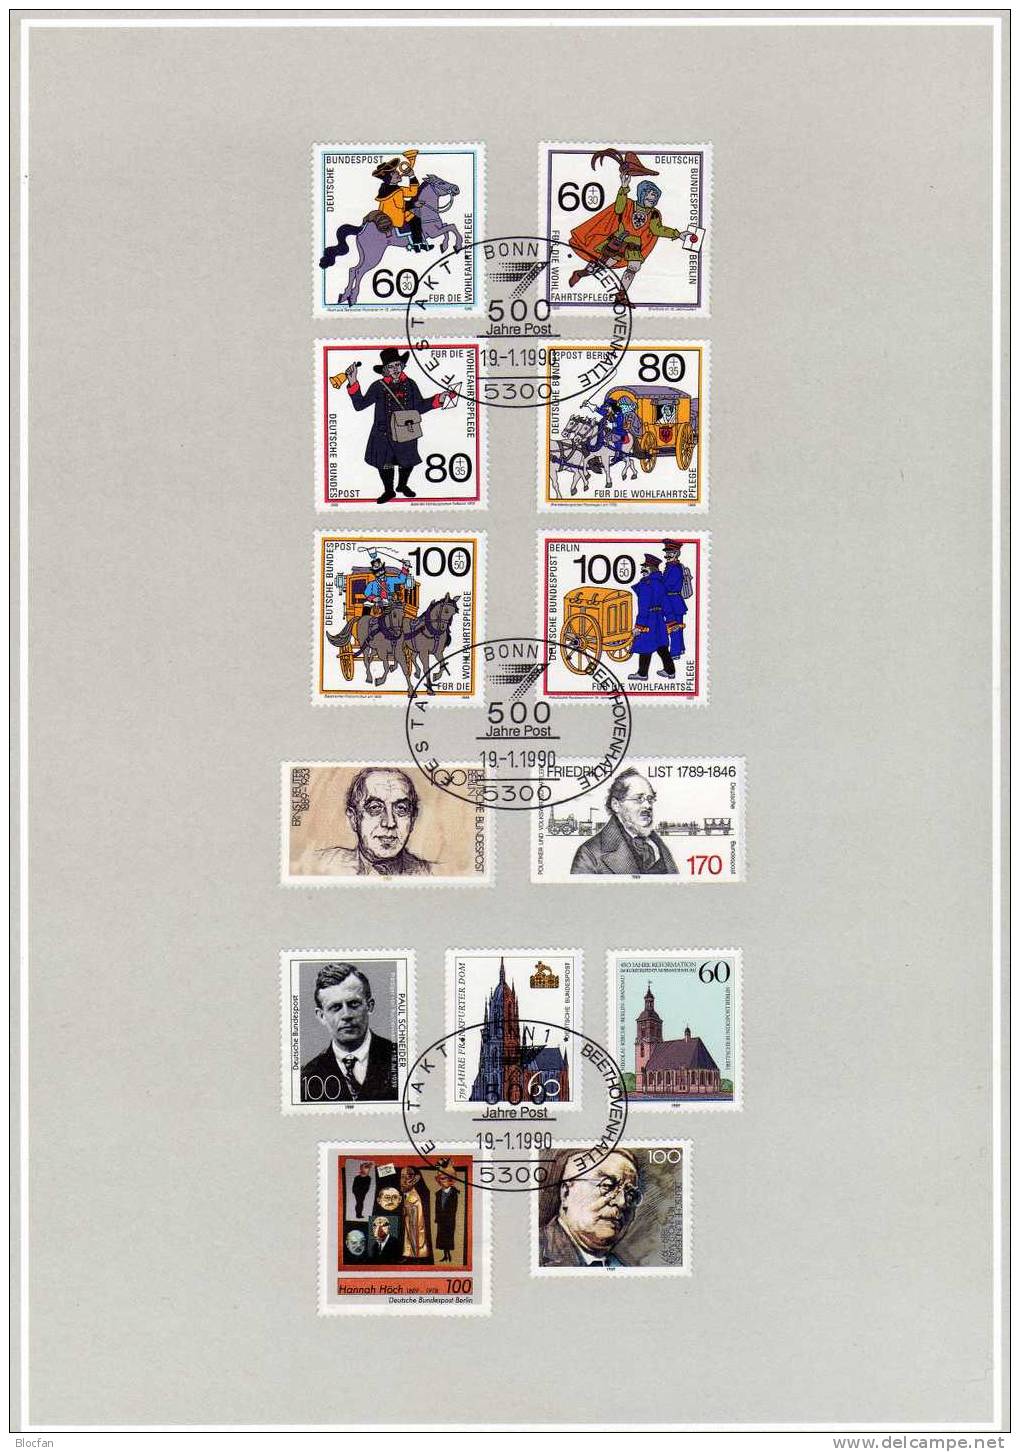 Edition 500 Jahre Post 1990 Sorgenkind Deutschland mit 26 Ausgaben o 76€ BUND/BERLIN of stamp philatelic book bf Germany